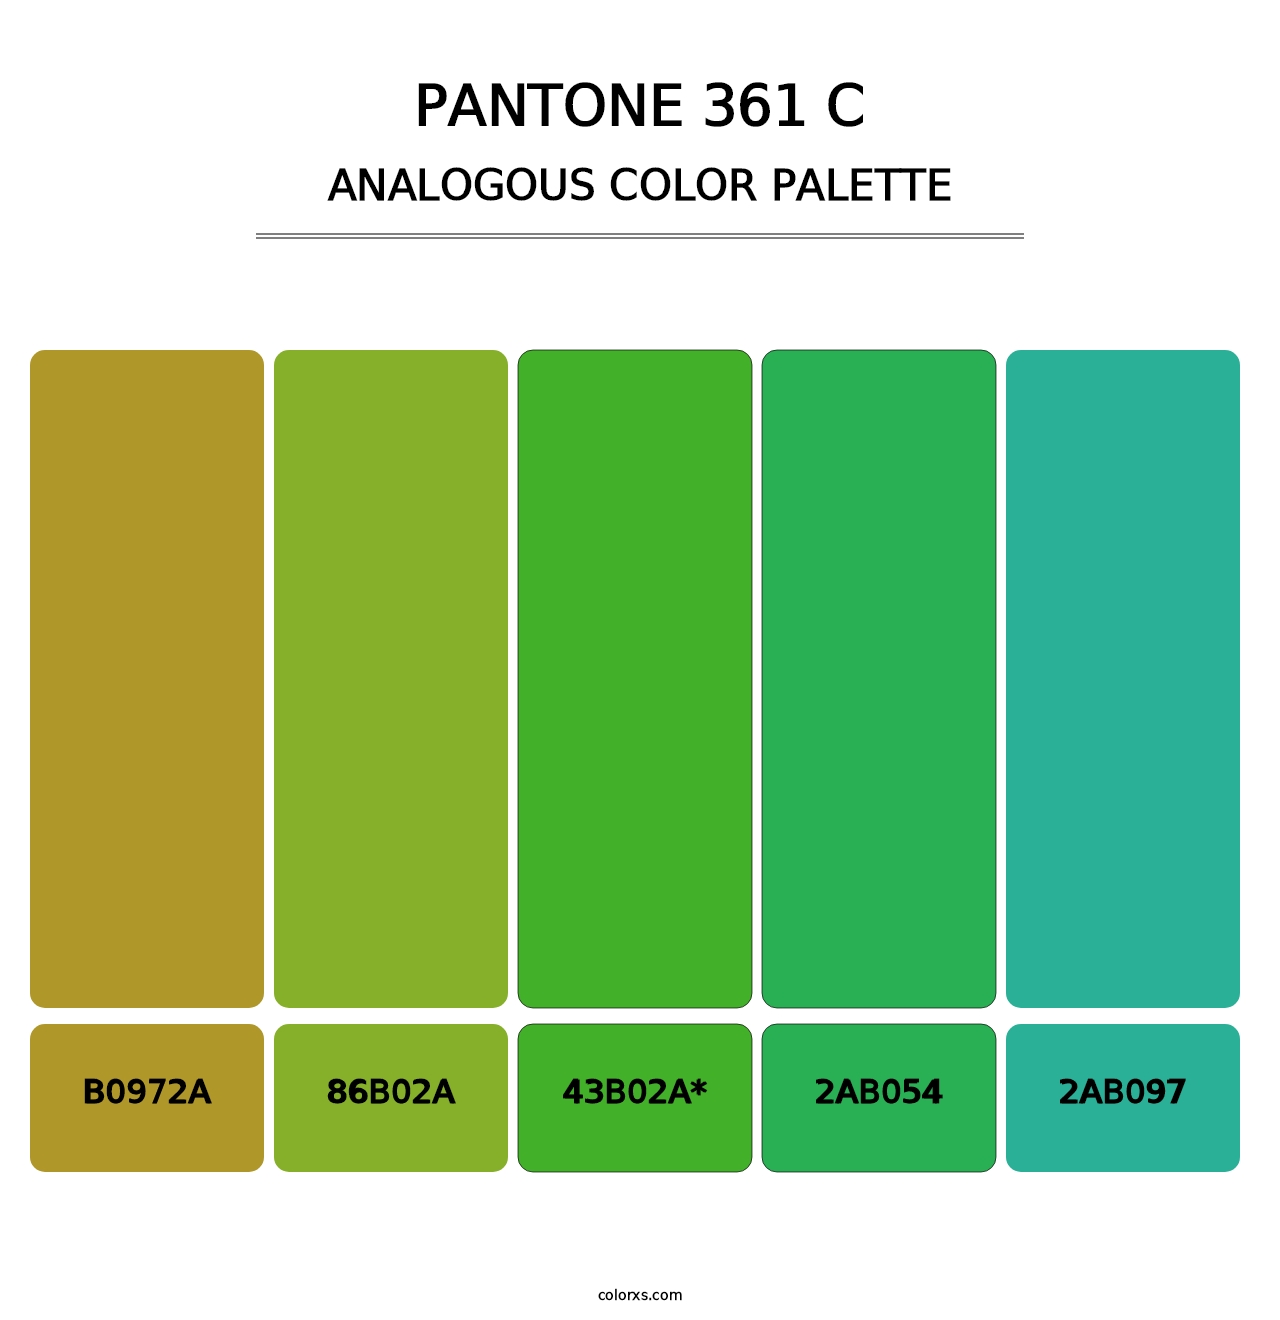 PANTONE 361 C - Analogous Color Palette